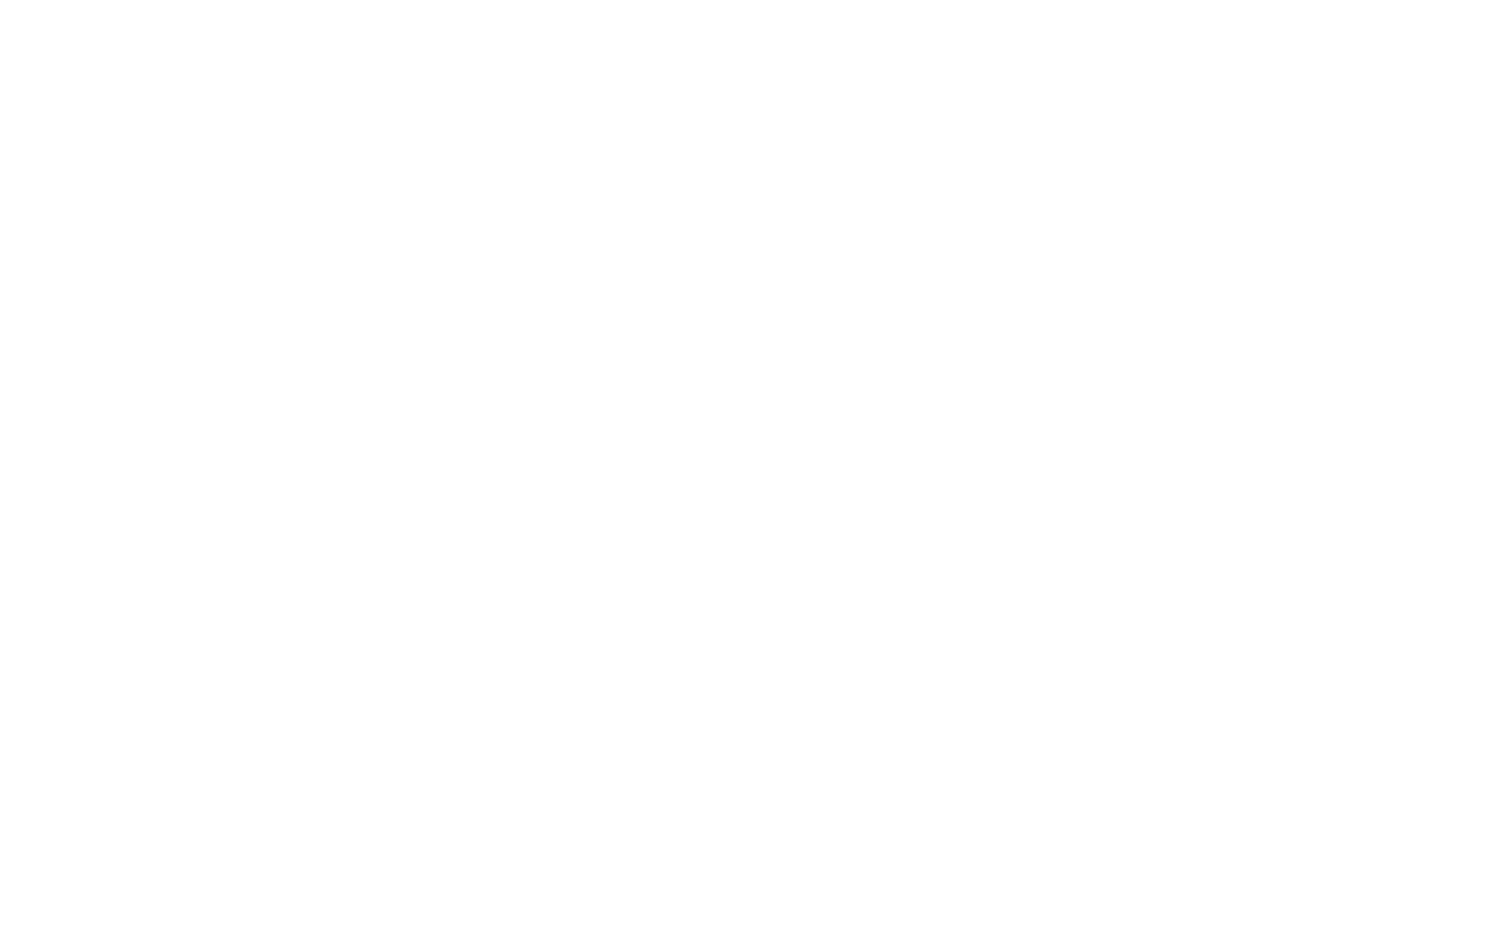 Ingredion logo large for dark backgrounds (transparent PNG)